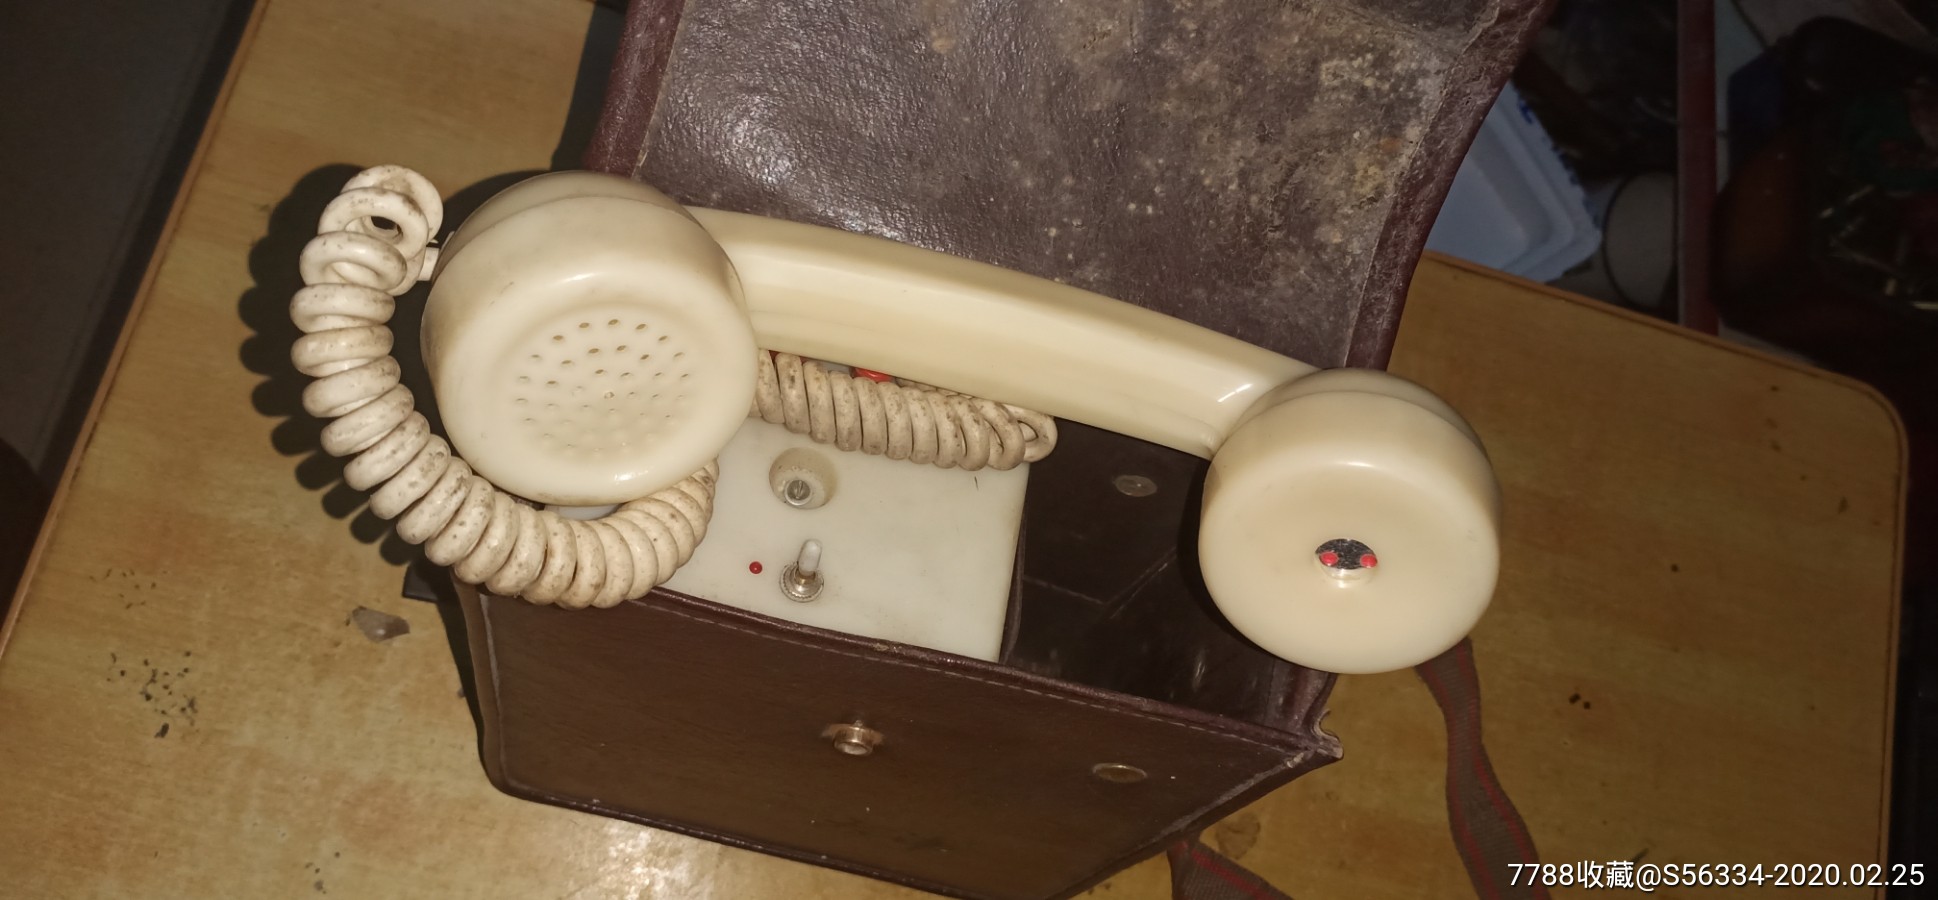 少见白色手摇电话,旧电话机